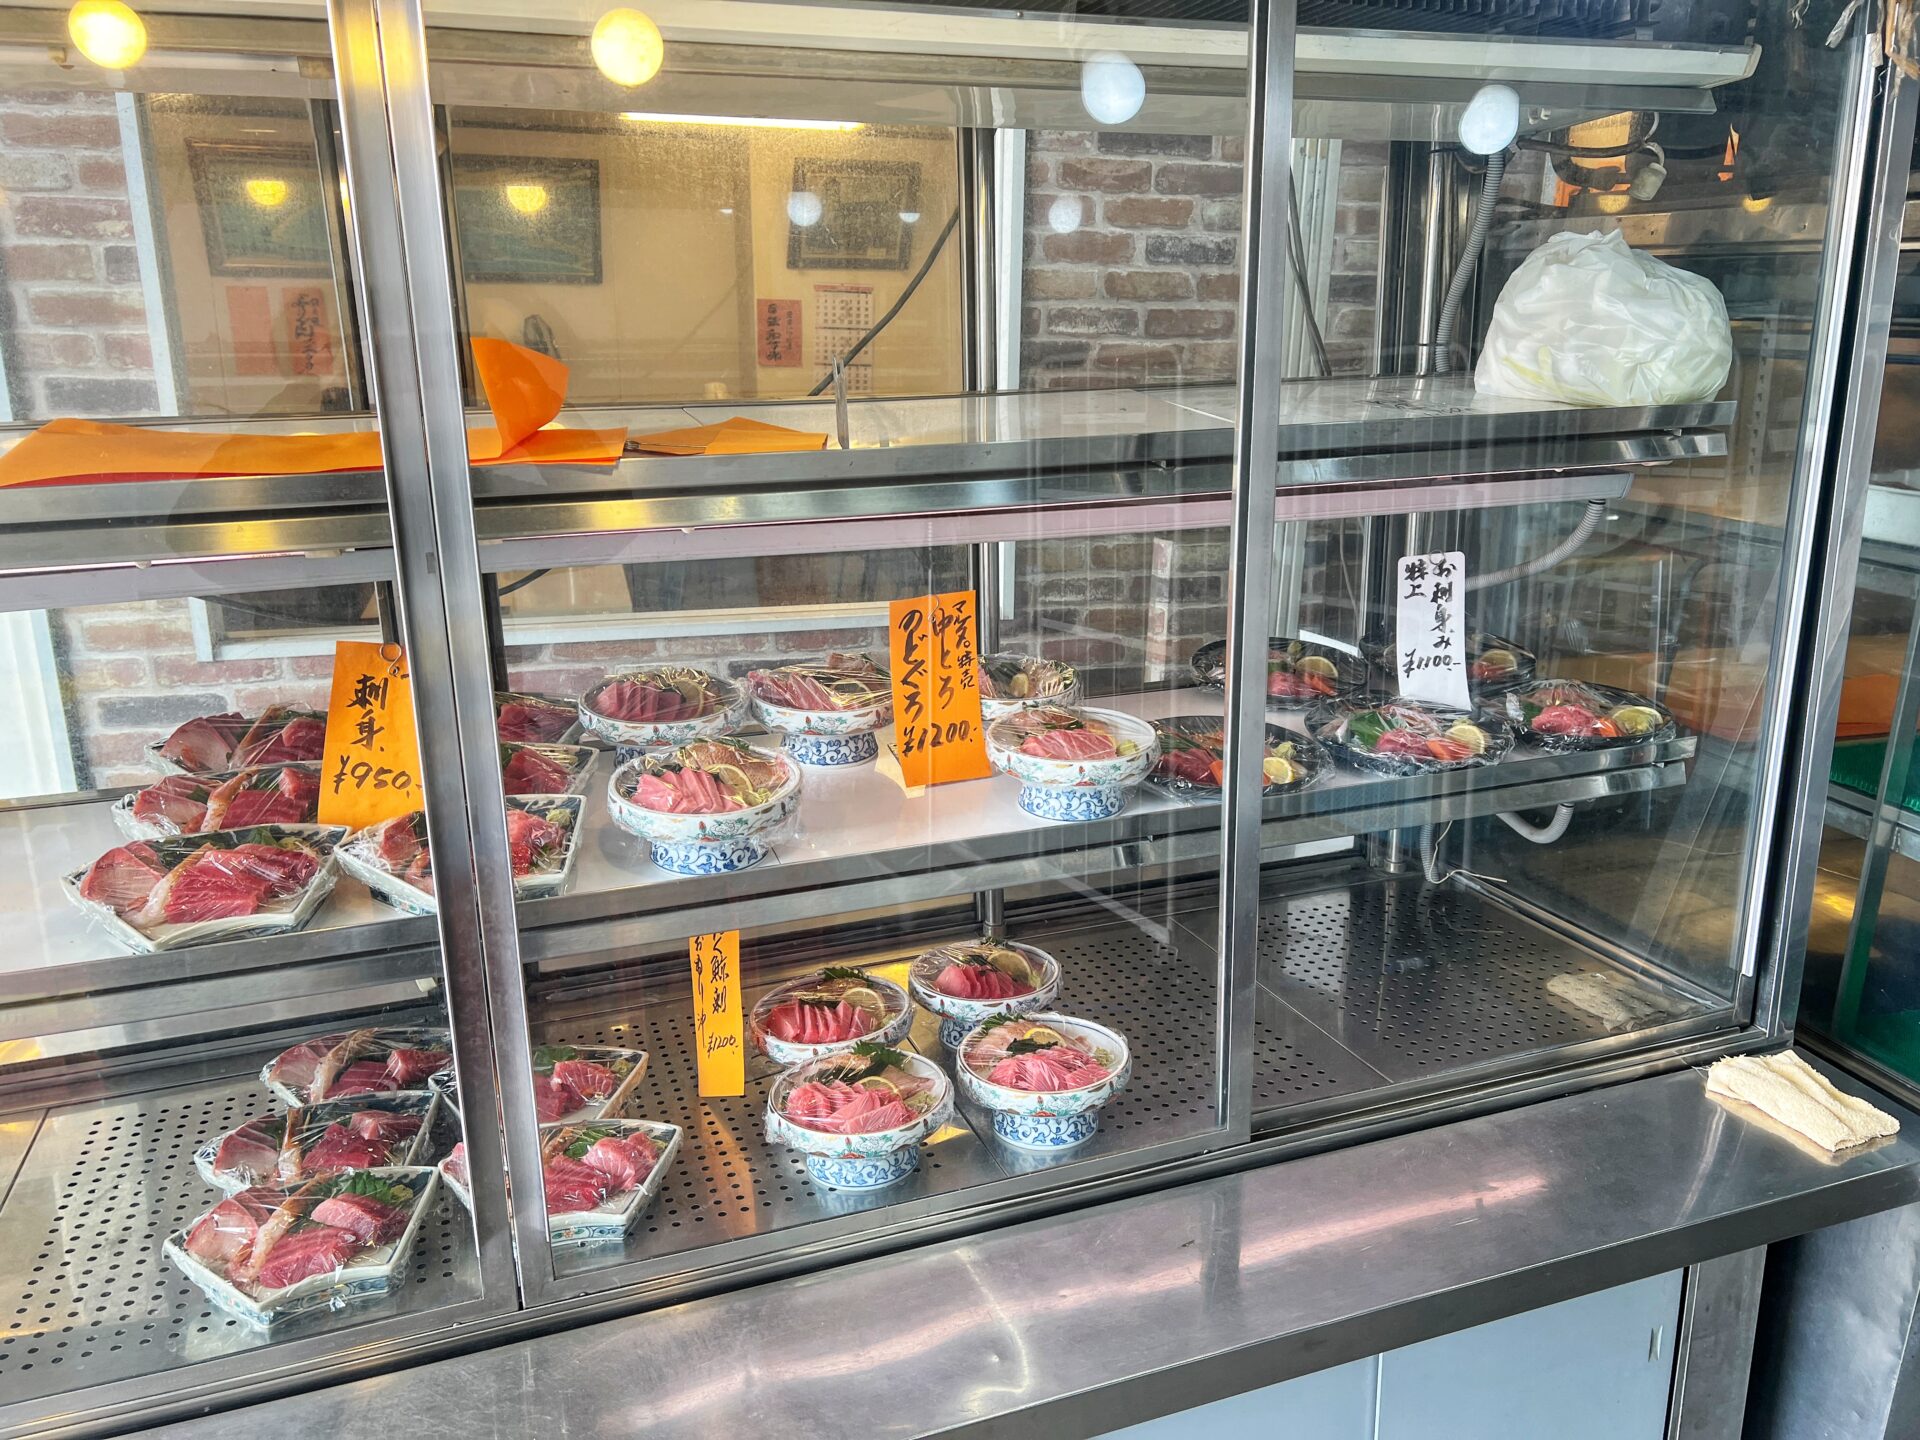 所沢市「定食や澄川」穴場ランチ！海鮮丼のネタが新鮮すぎる海なし県埼玉の市場内食堂